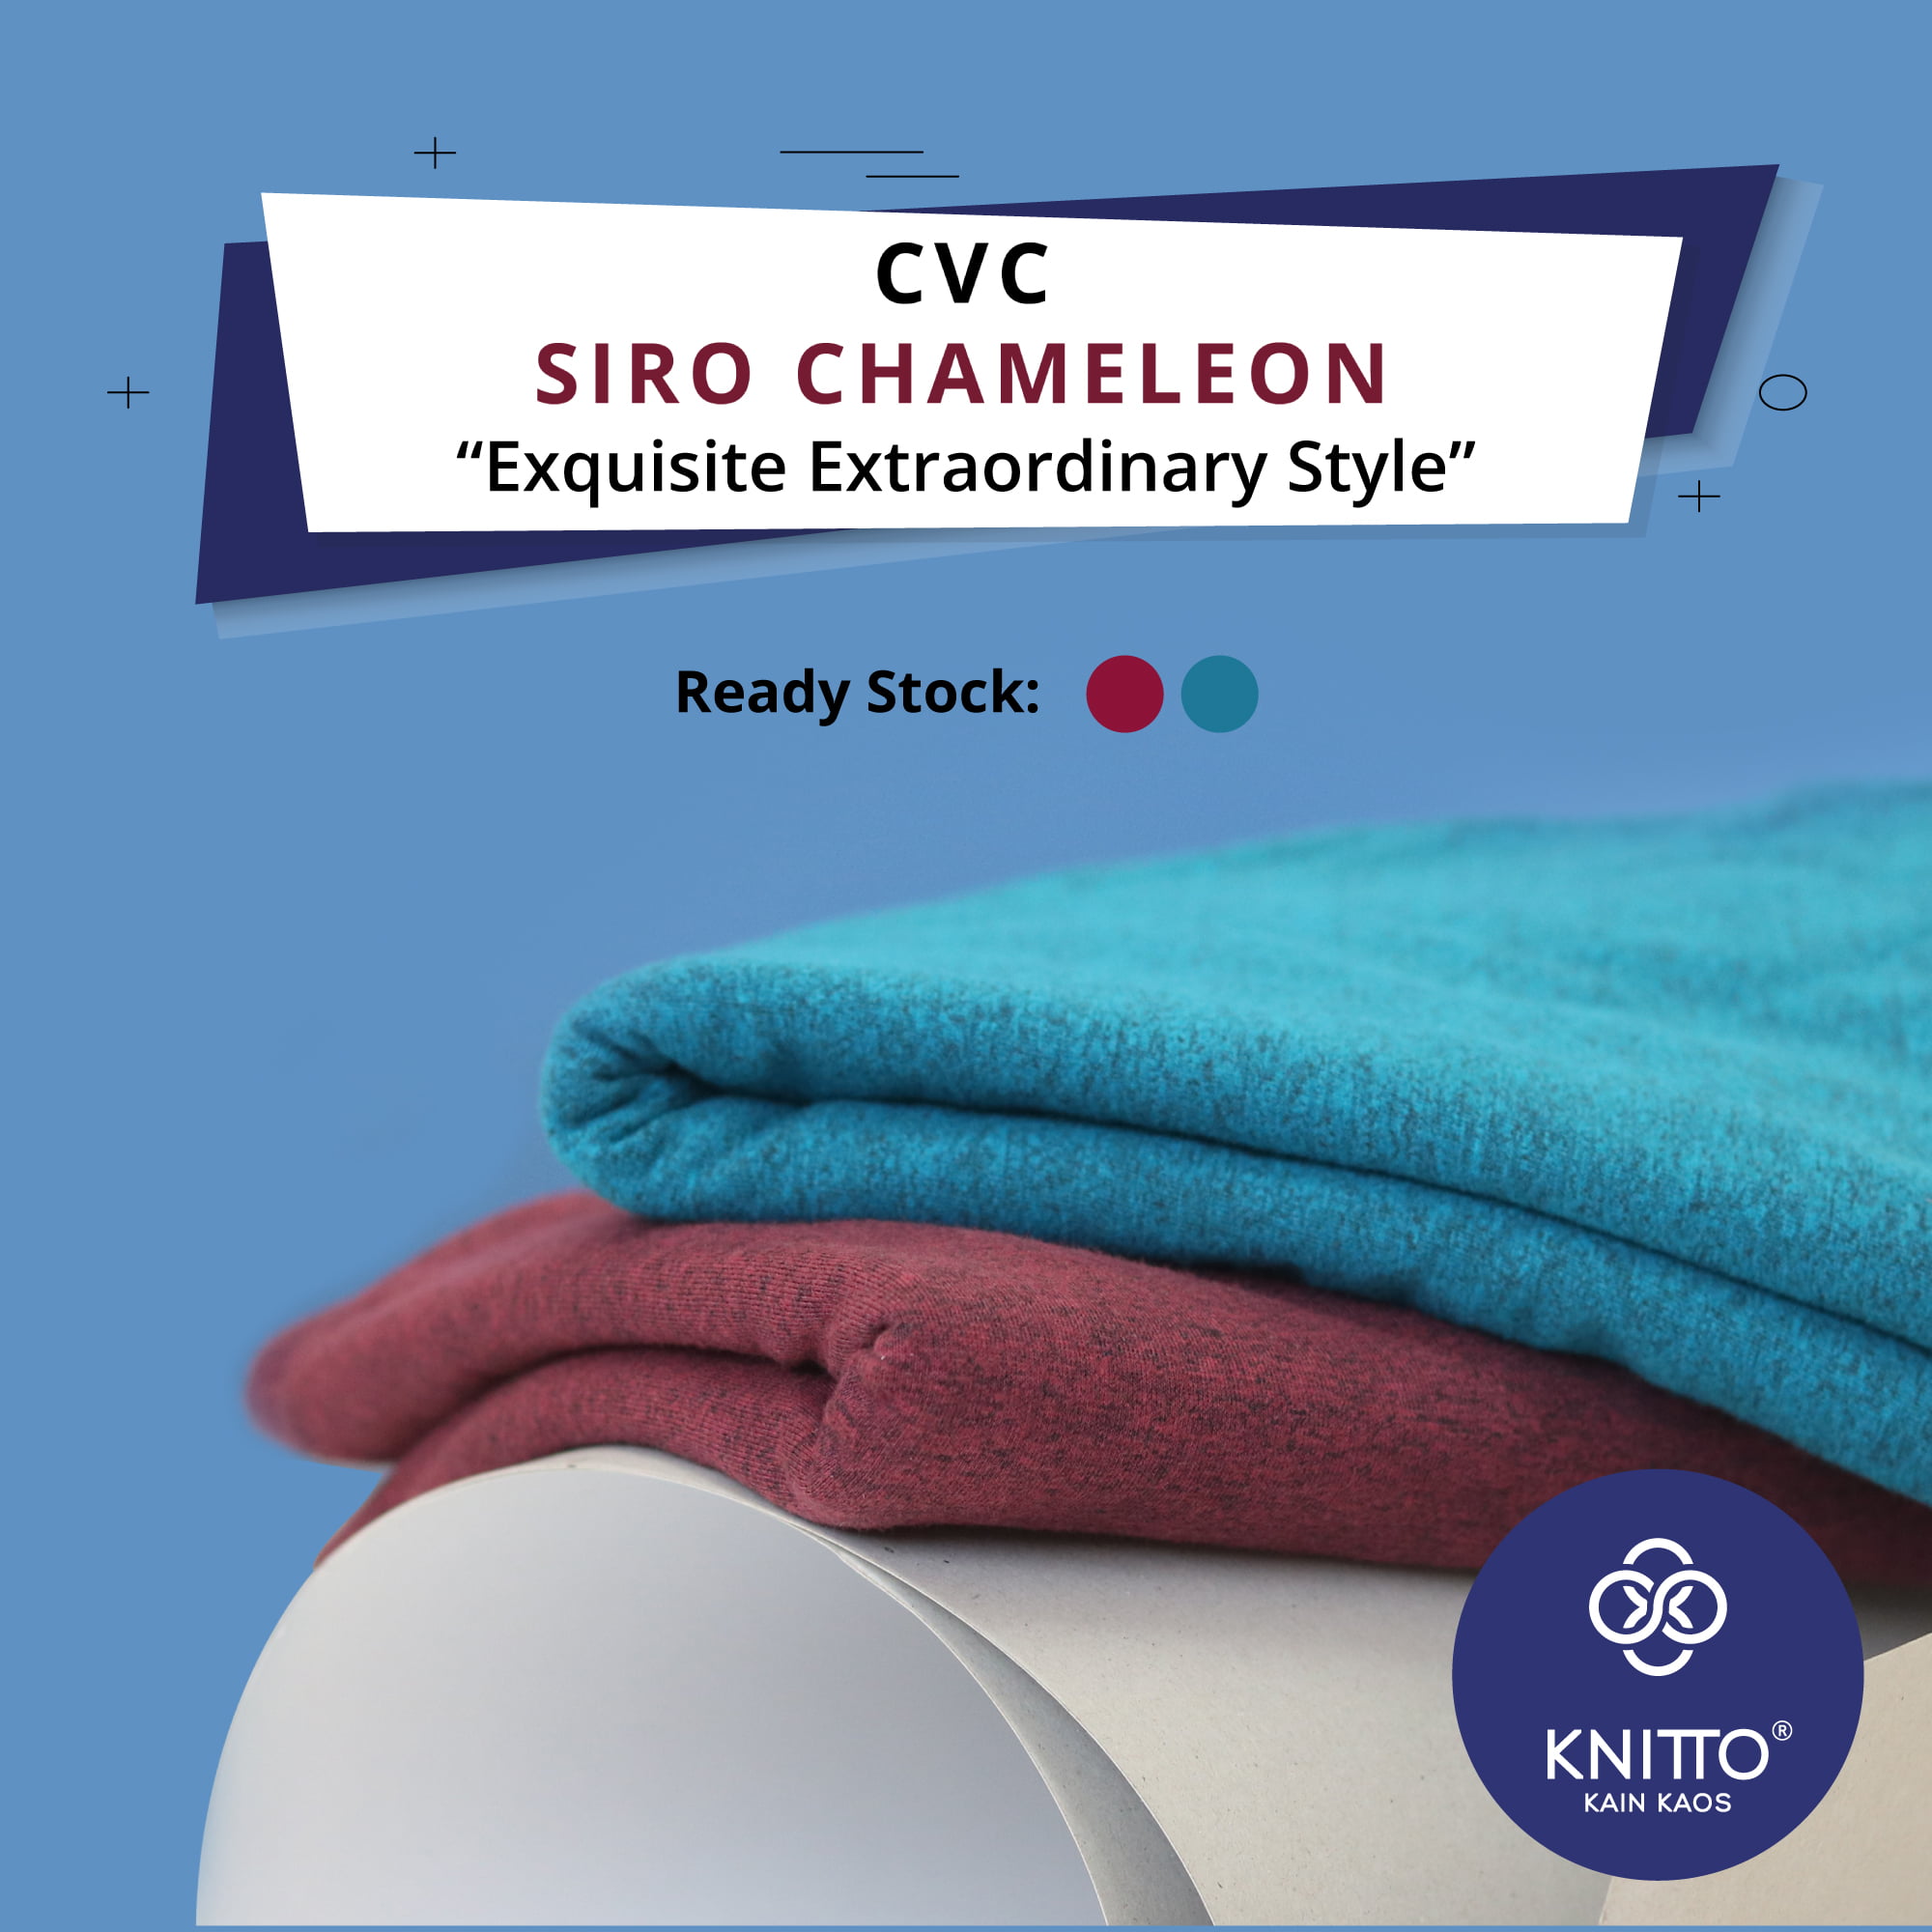 Mengenal CVC Siro Chameleon 1